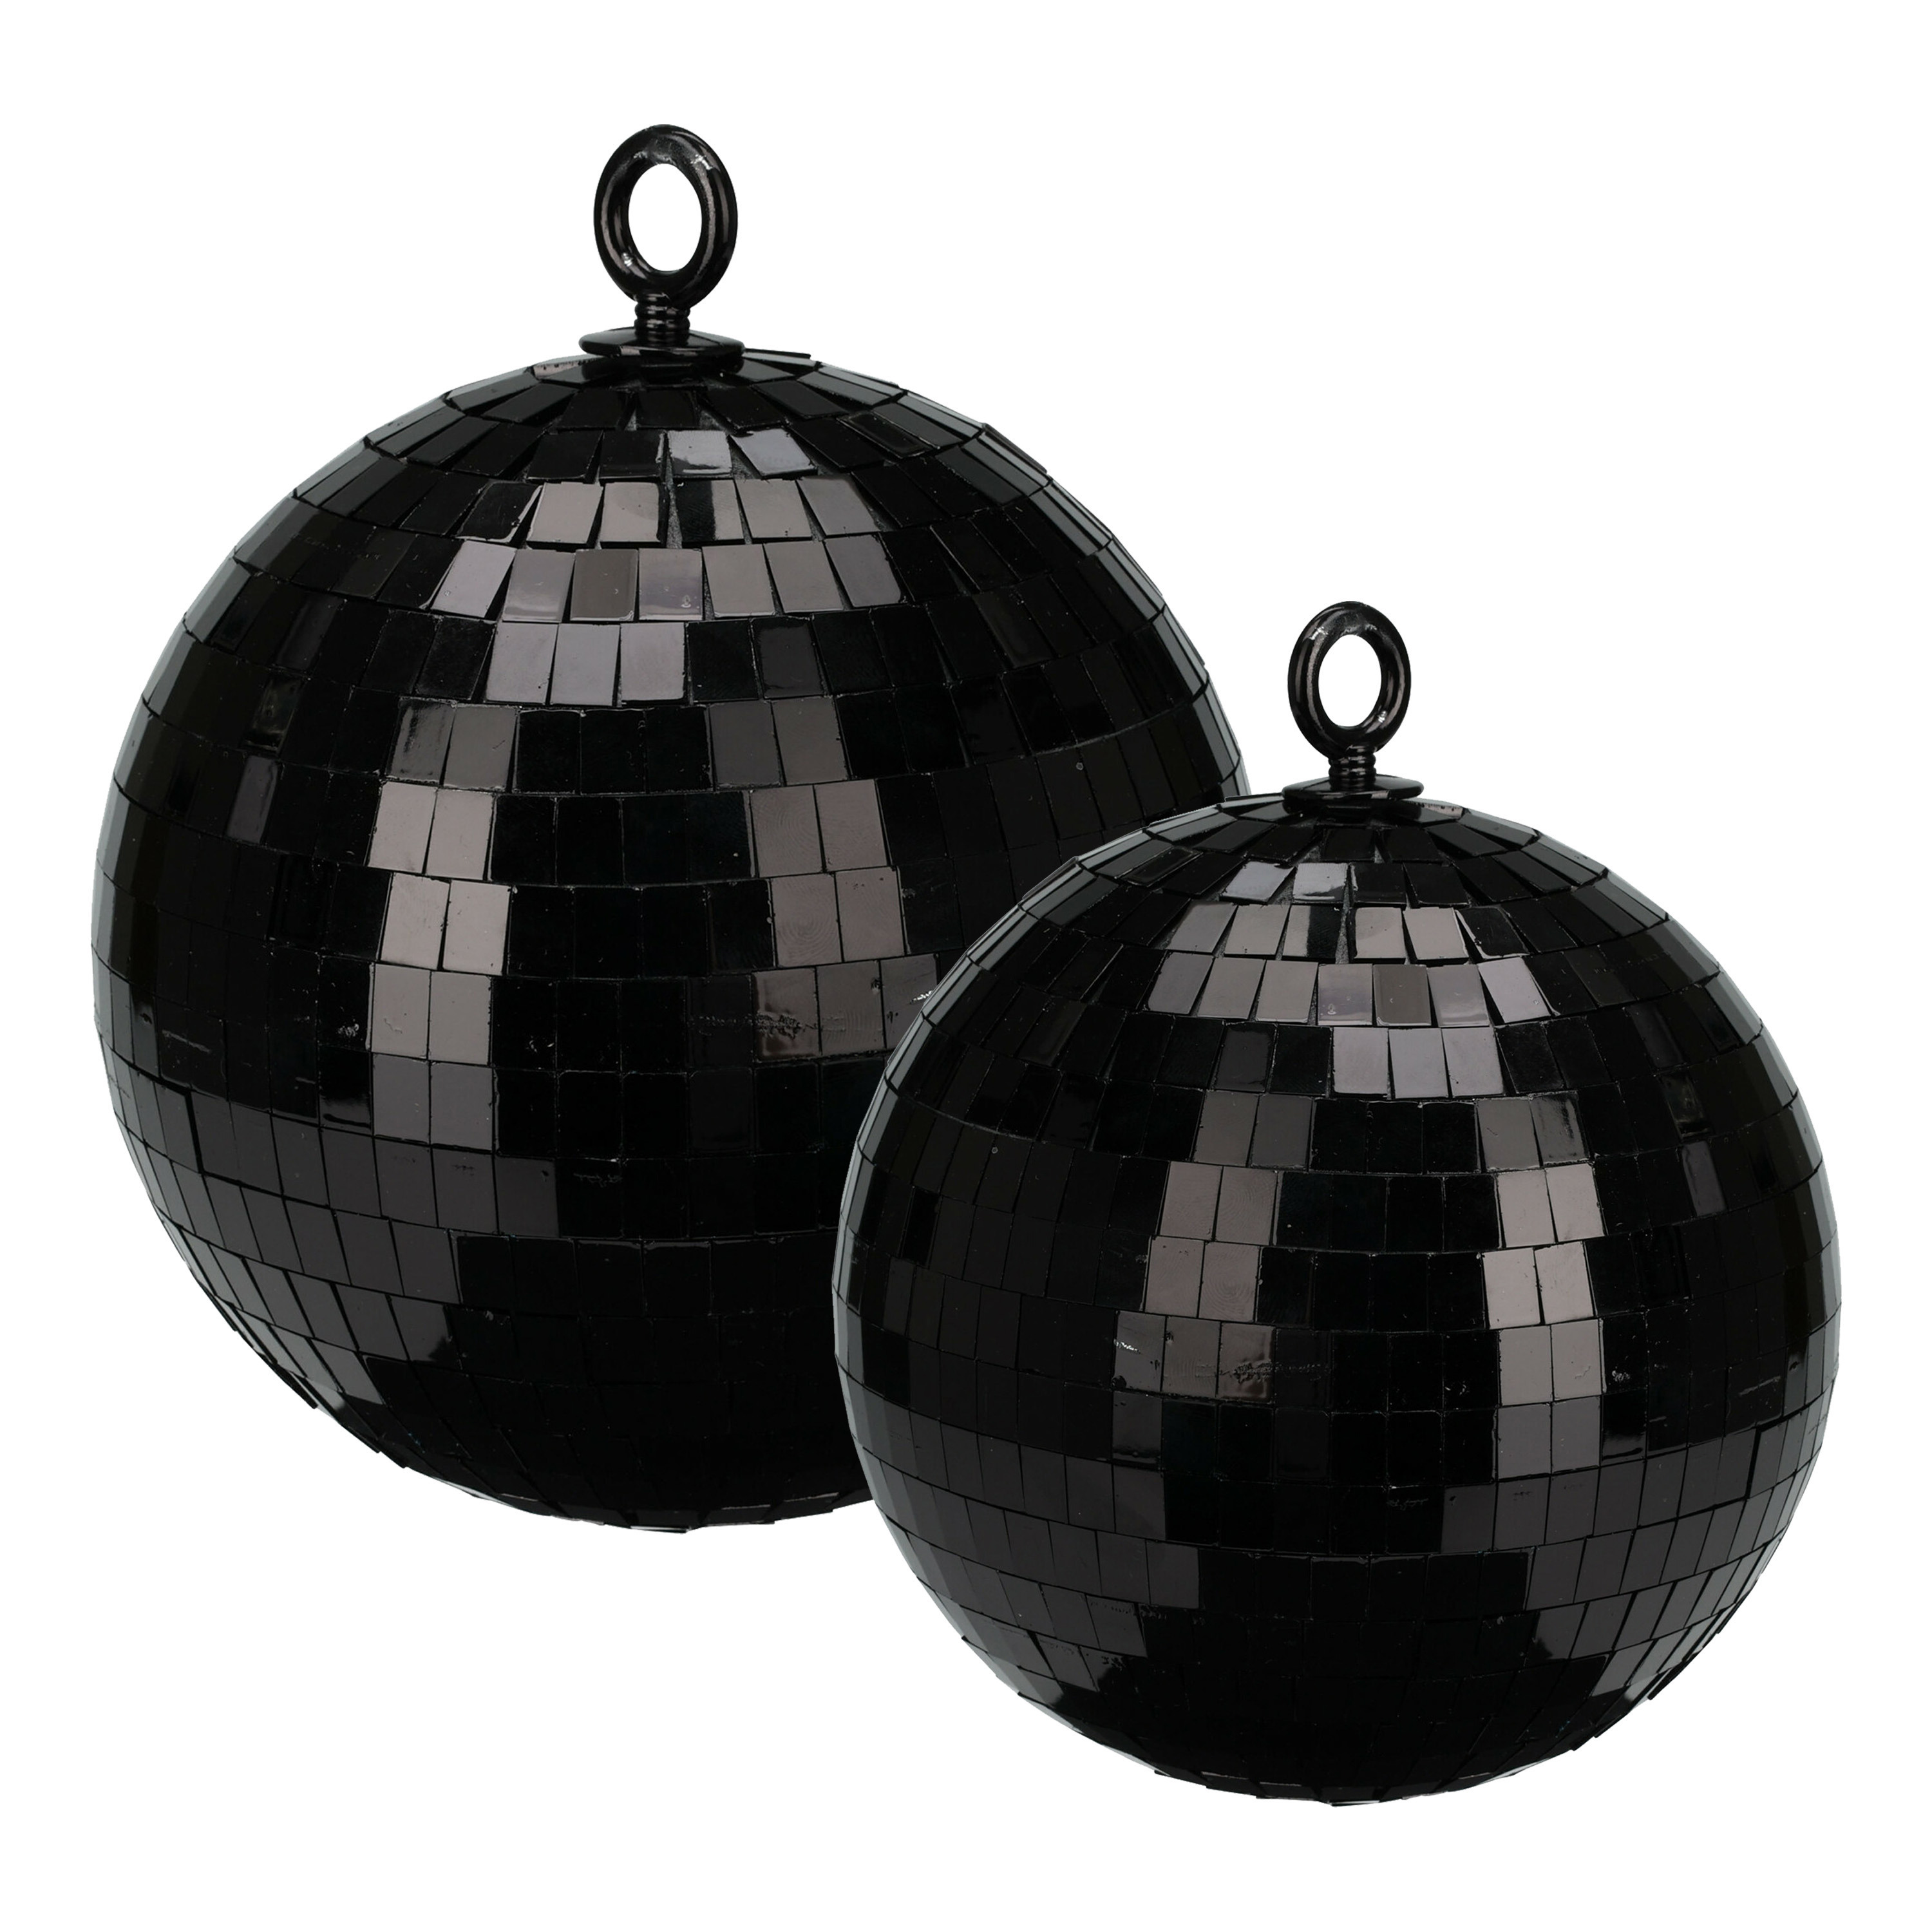 Grote discobal kerstballen 2x st zwart 15 en 18 cm kunststof